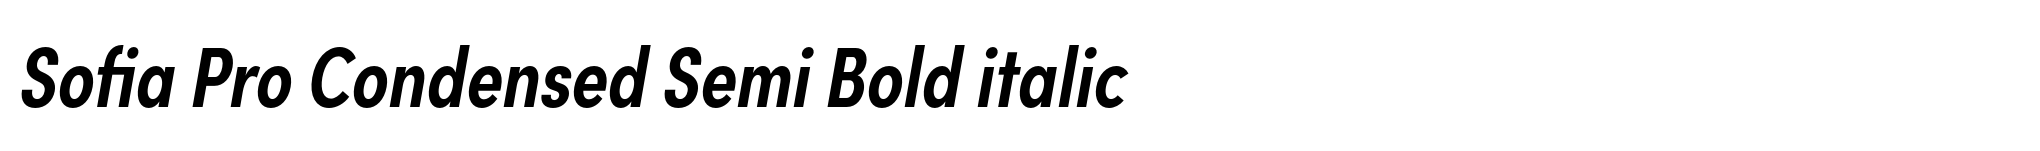 Sofia Pro Condensed Semi Bold italic image